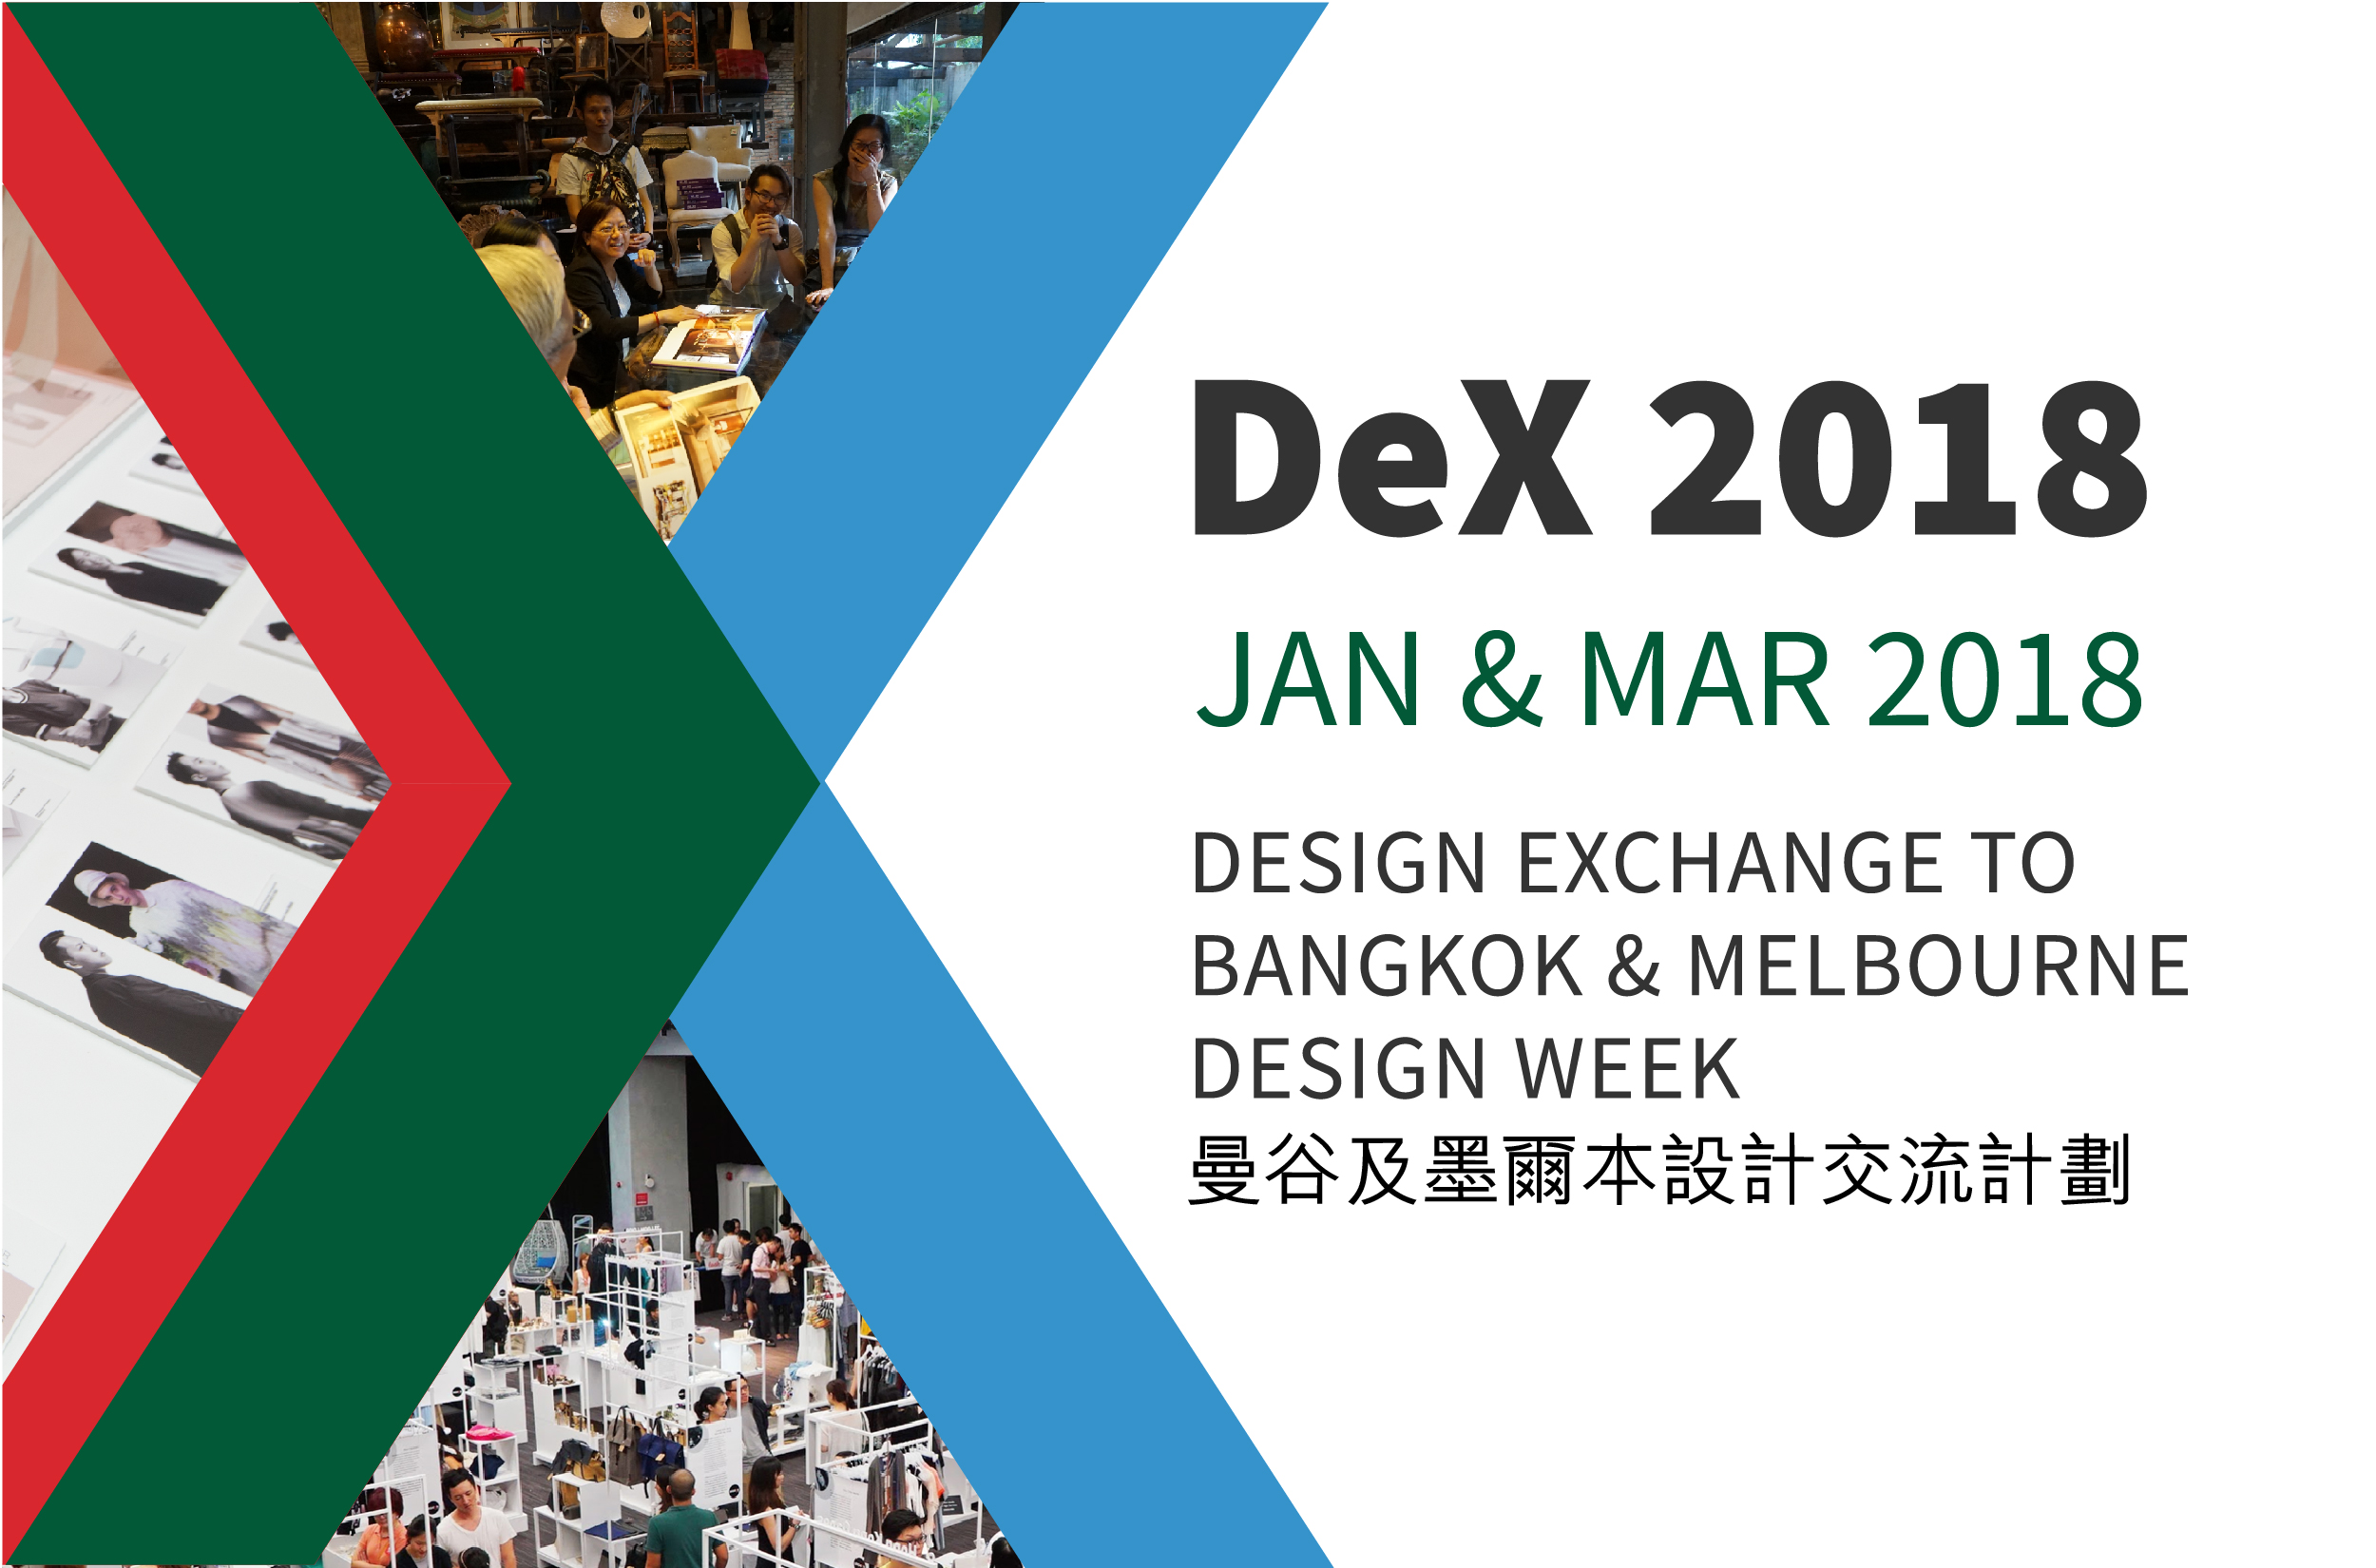 "DeX 2018" Design Exchange to Bangkok & Melbourne Design Week Application Deadline